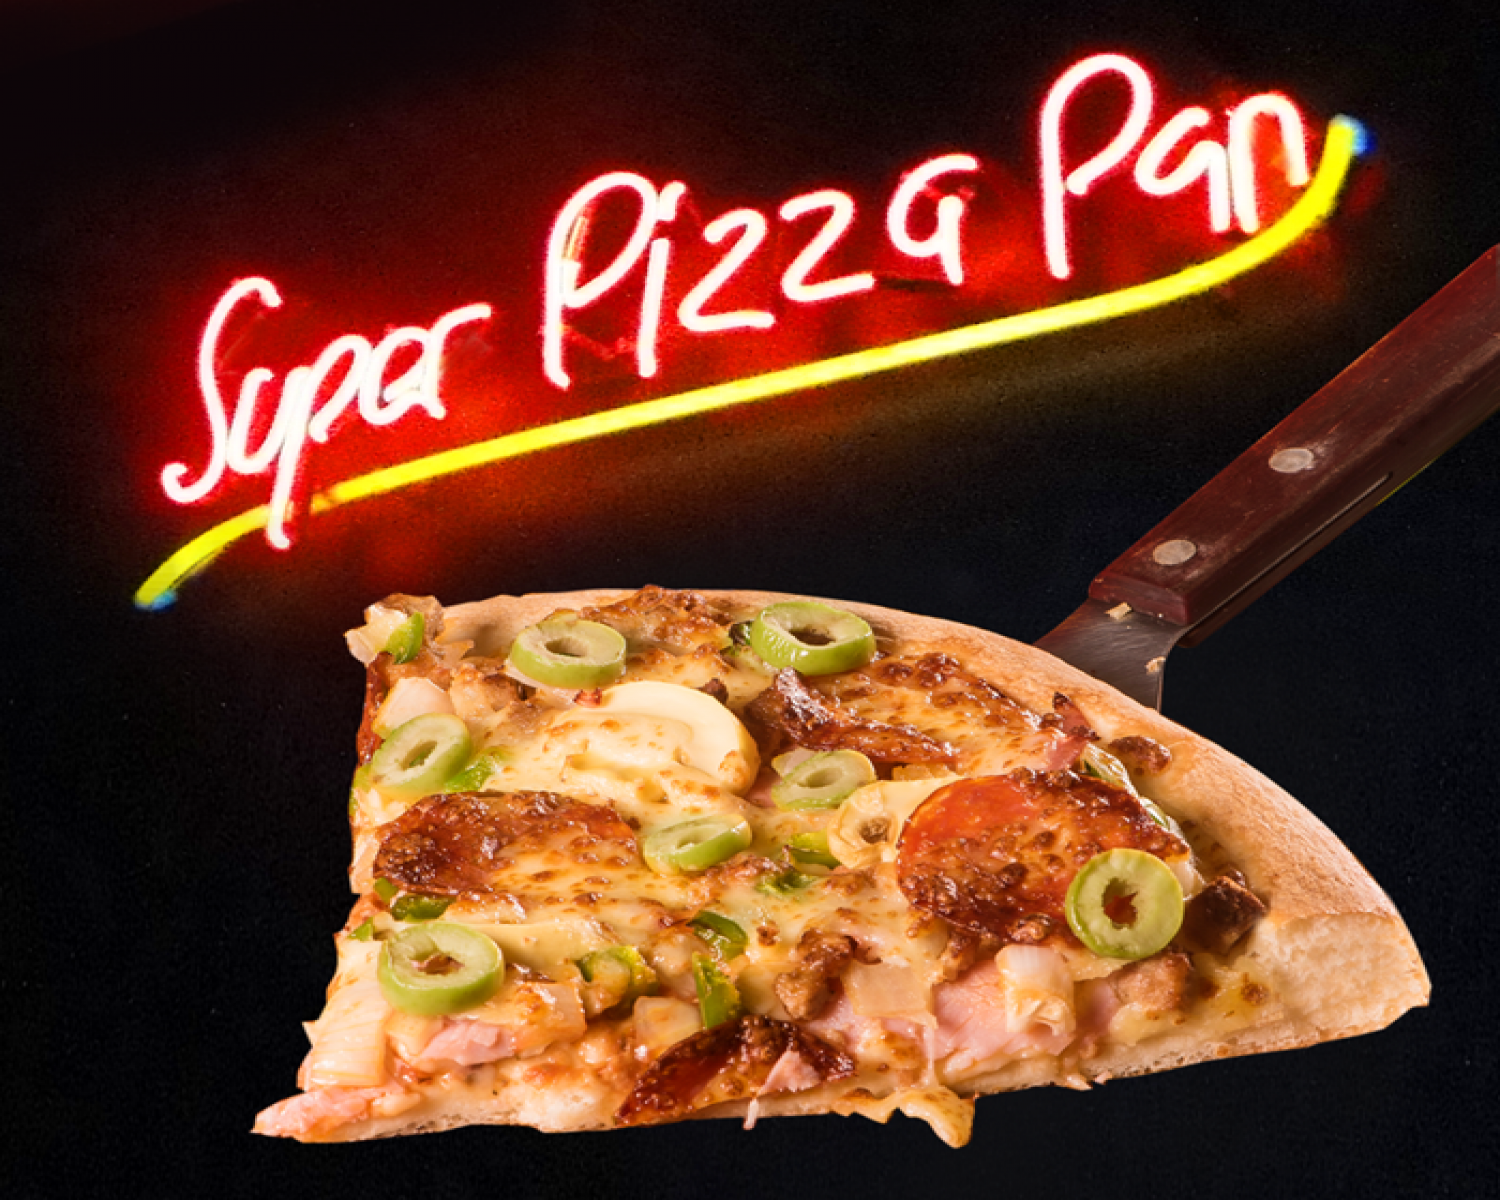 Super Pizza Pan Brasil by Super Pizza Pan Brasil